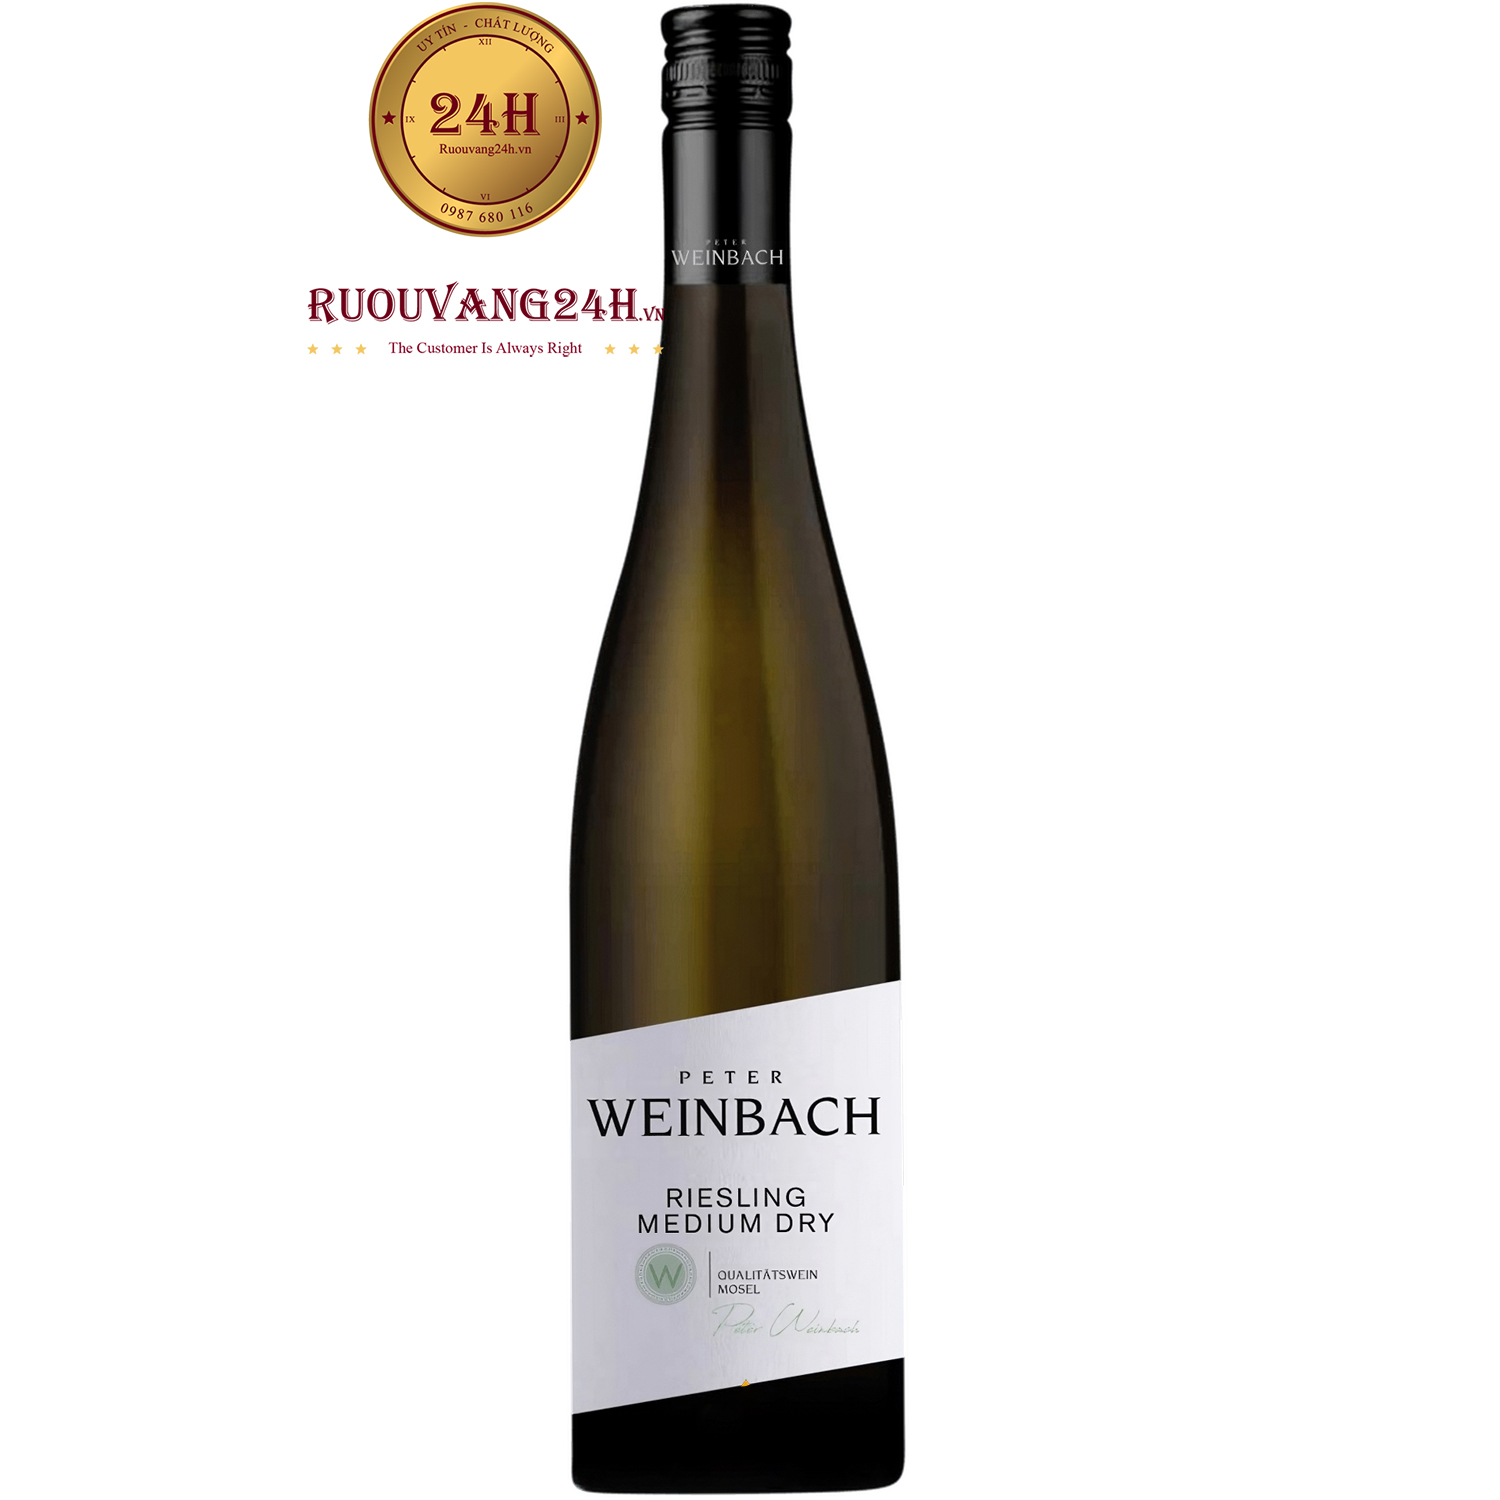 Rượu Vang Peter Weinbach Riesling Medium Dry